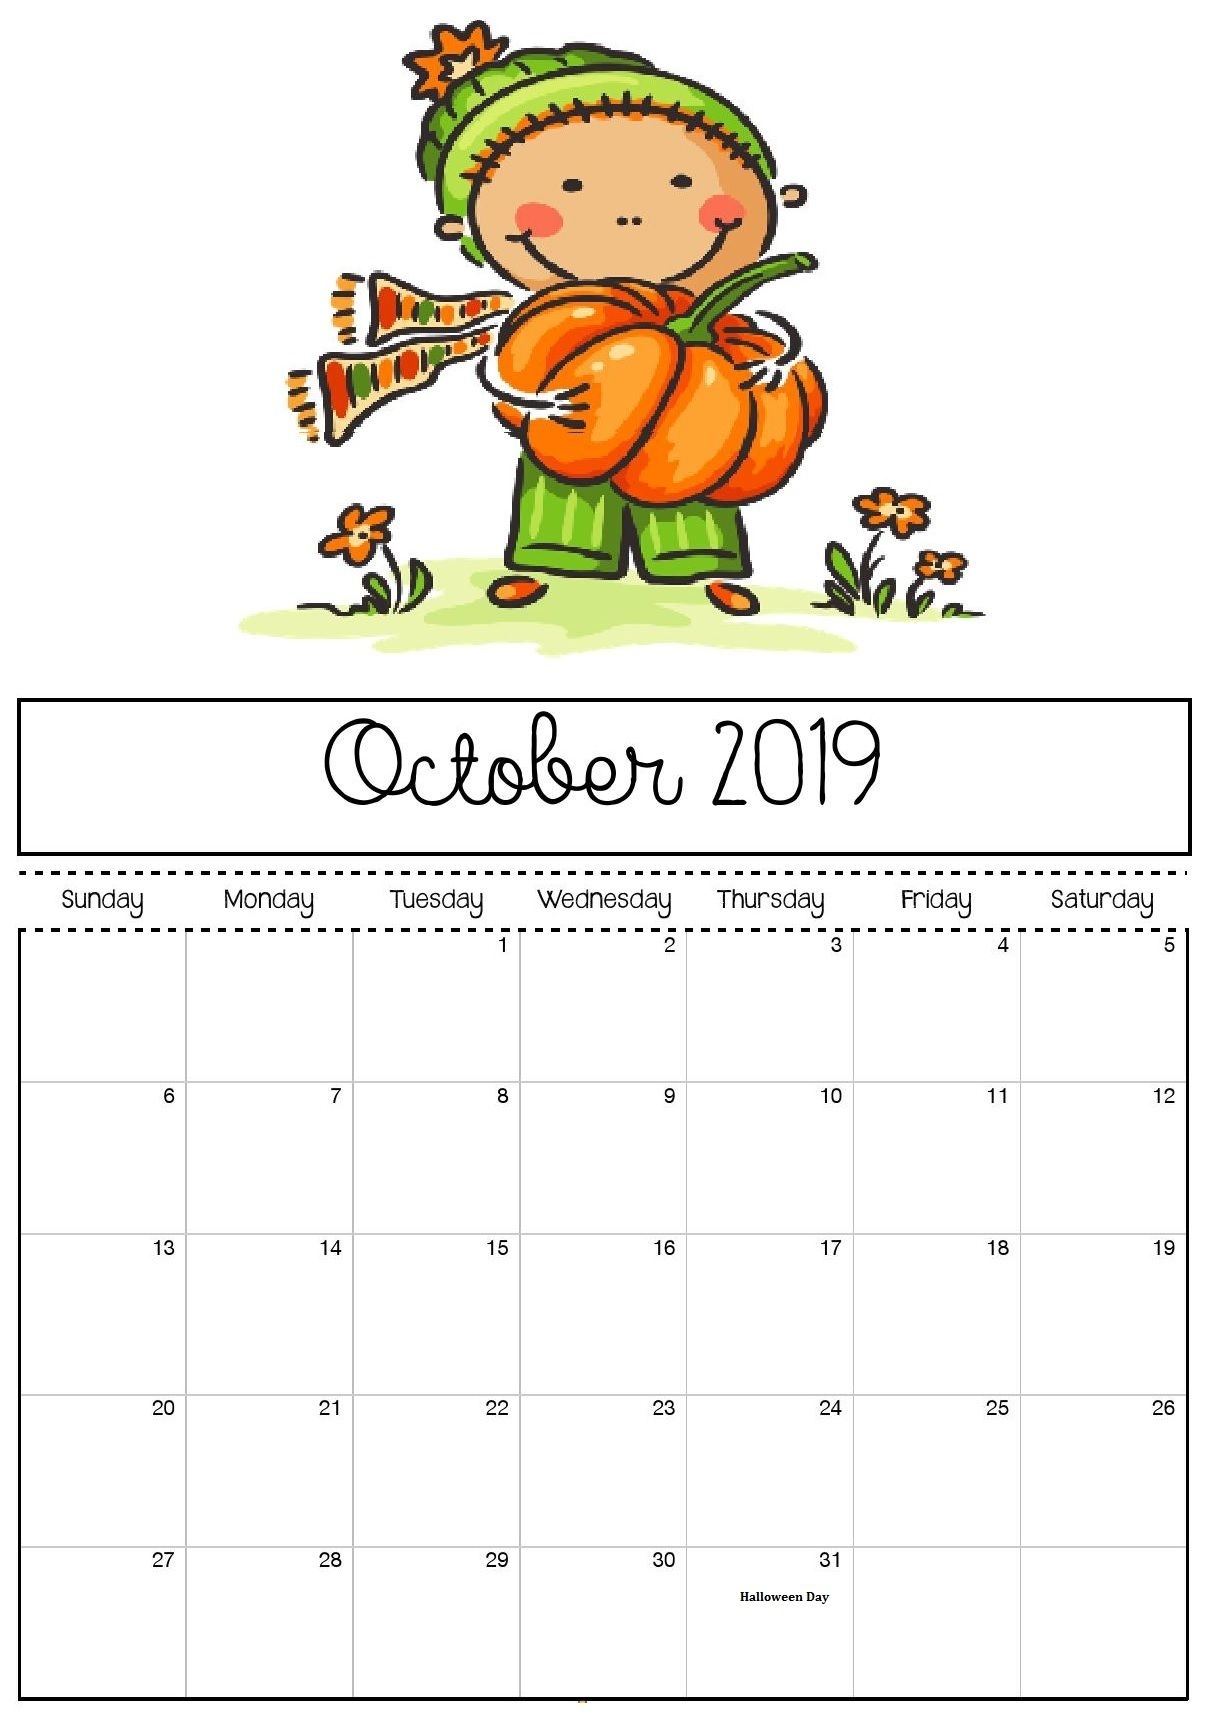 October 2019 Halloween Calendar | Kids Calendar, Print